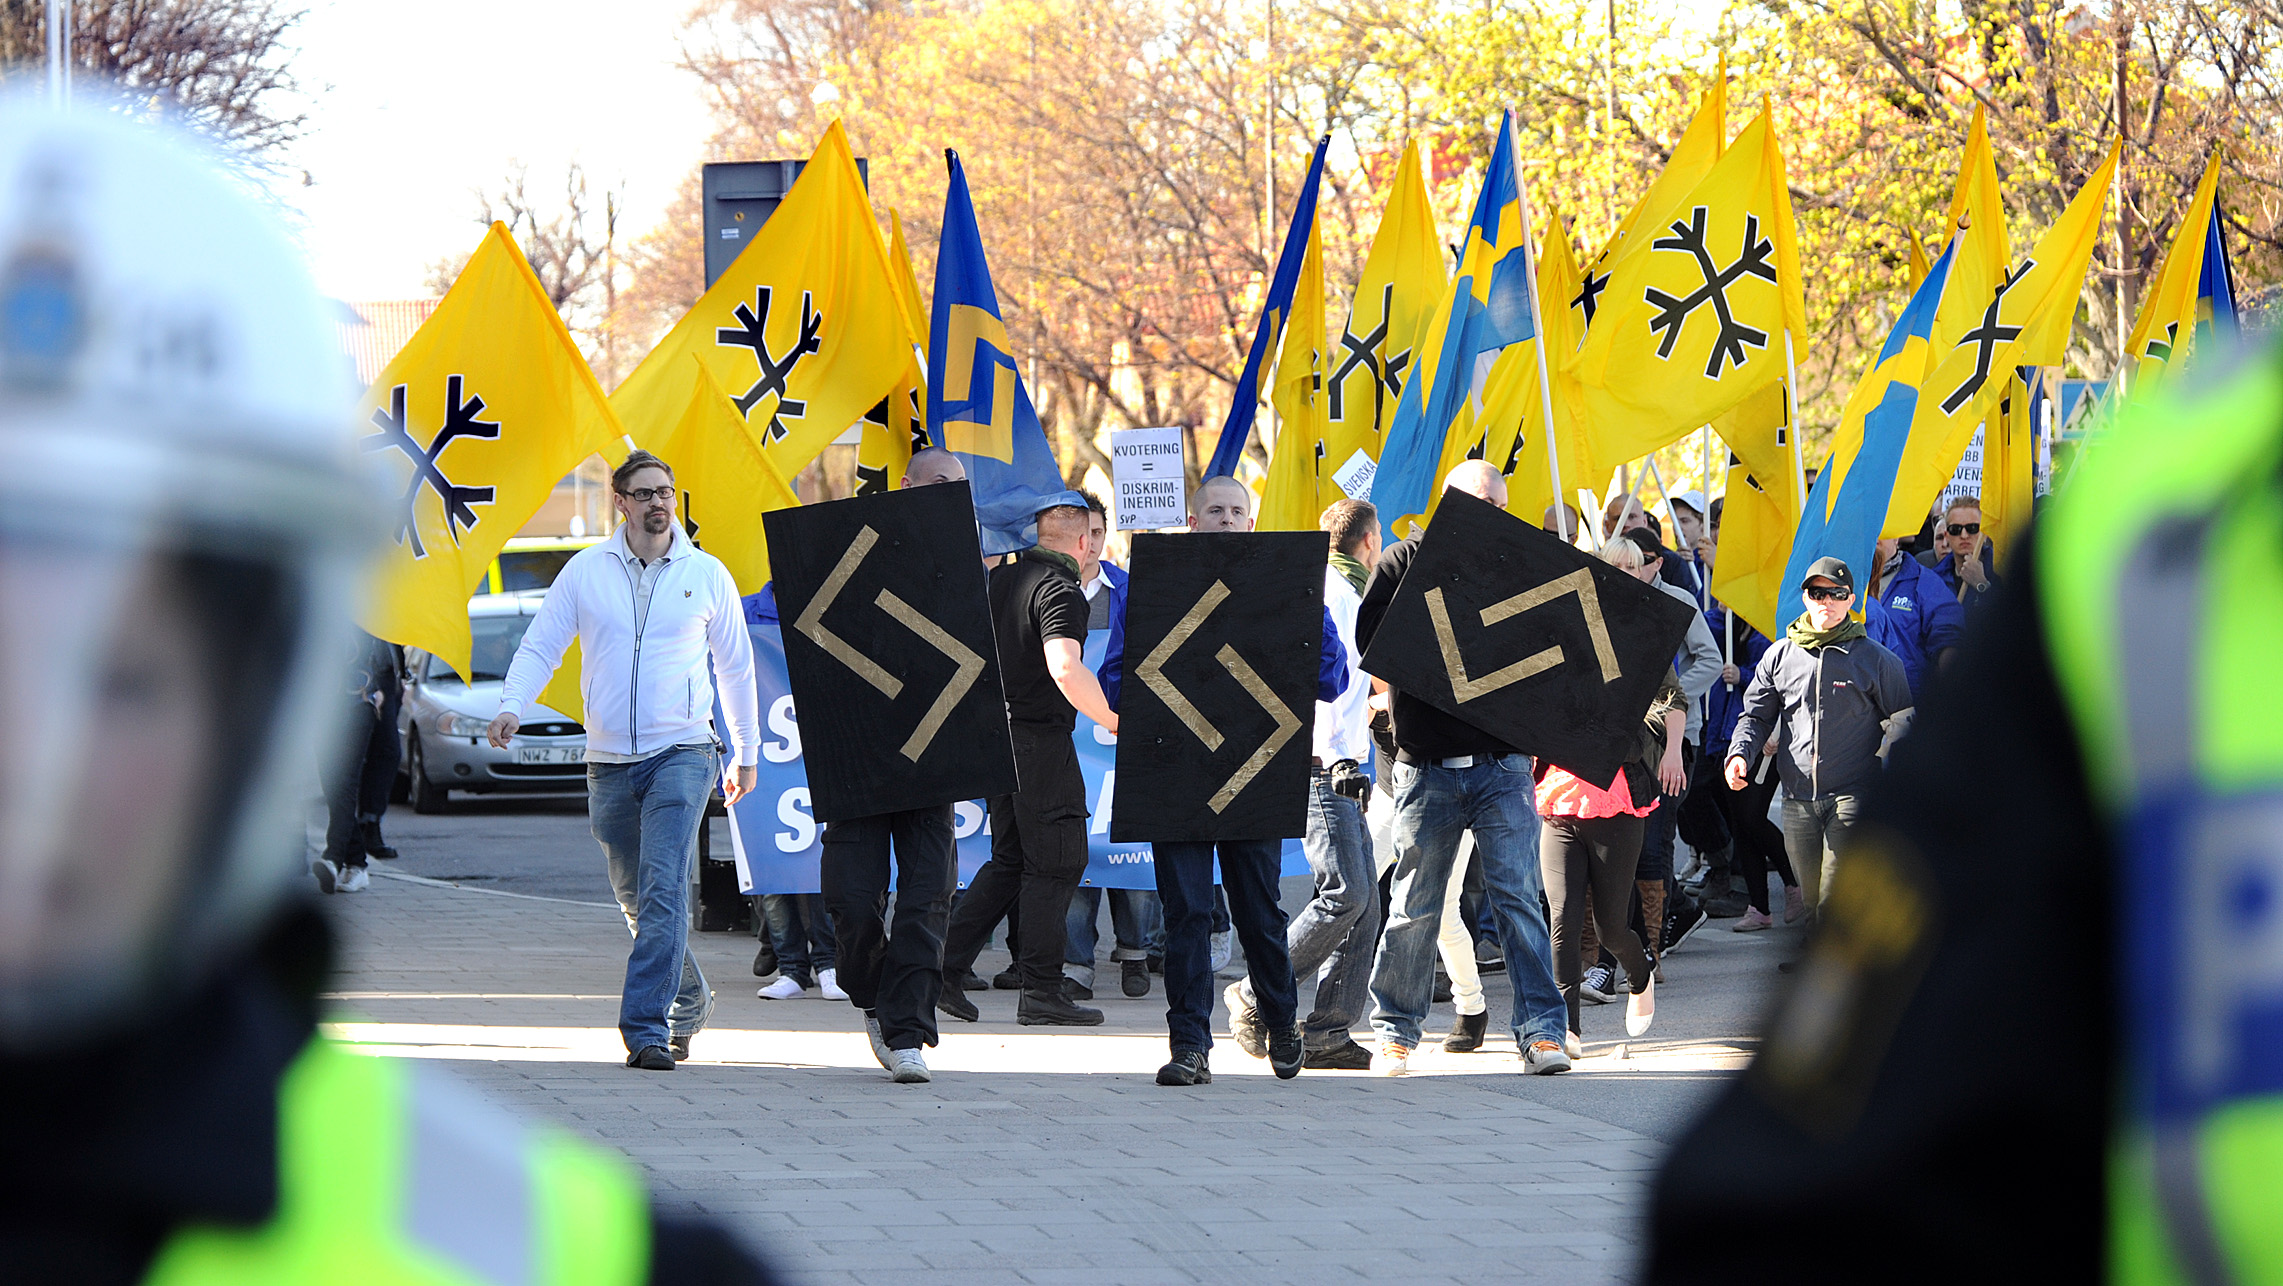 Svenskarnas Parti på marsch. Nu har de förstärkts av en sverigedemokrat och en före detta sverigedemokrat.